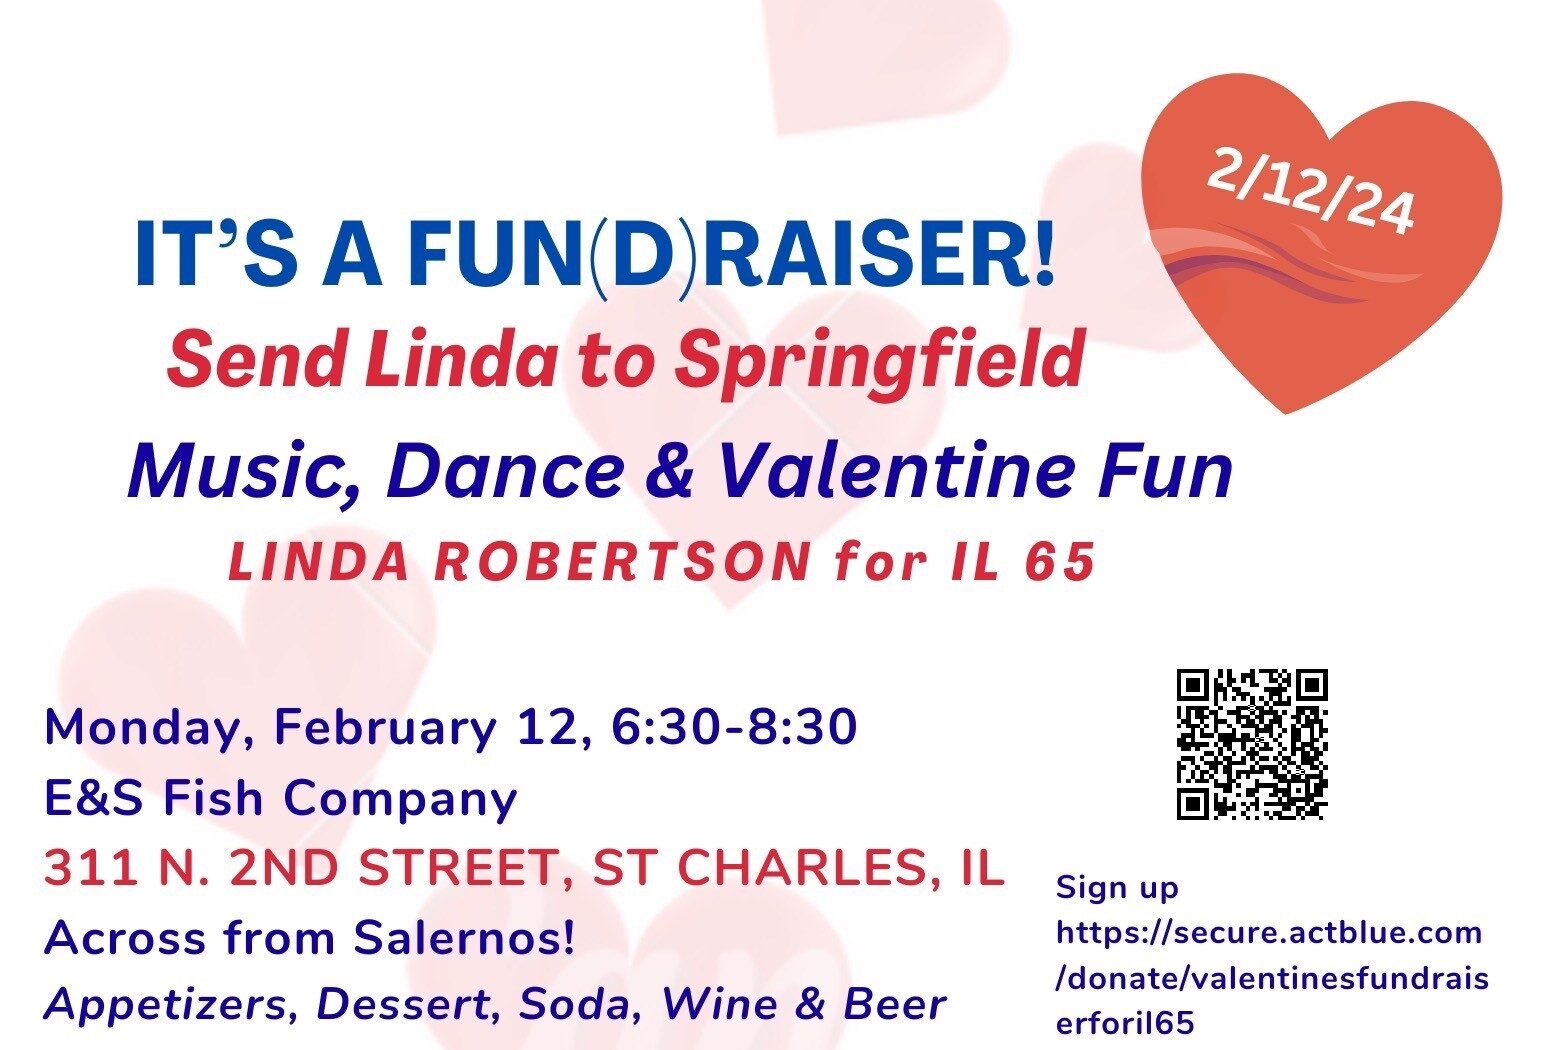 February 12 Fundraiser for Linda Robertson